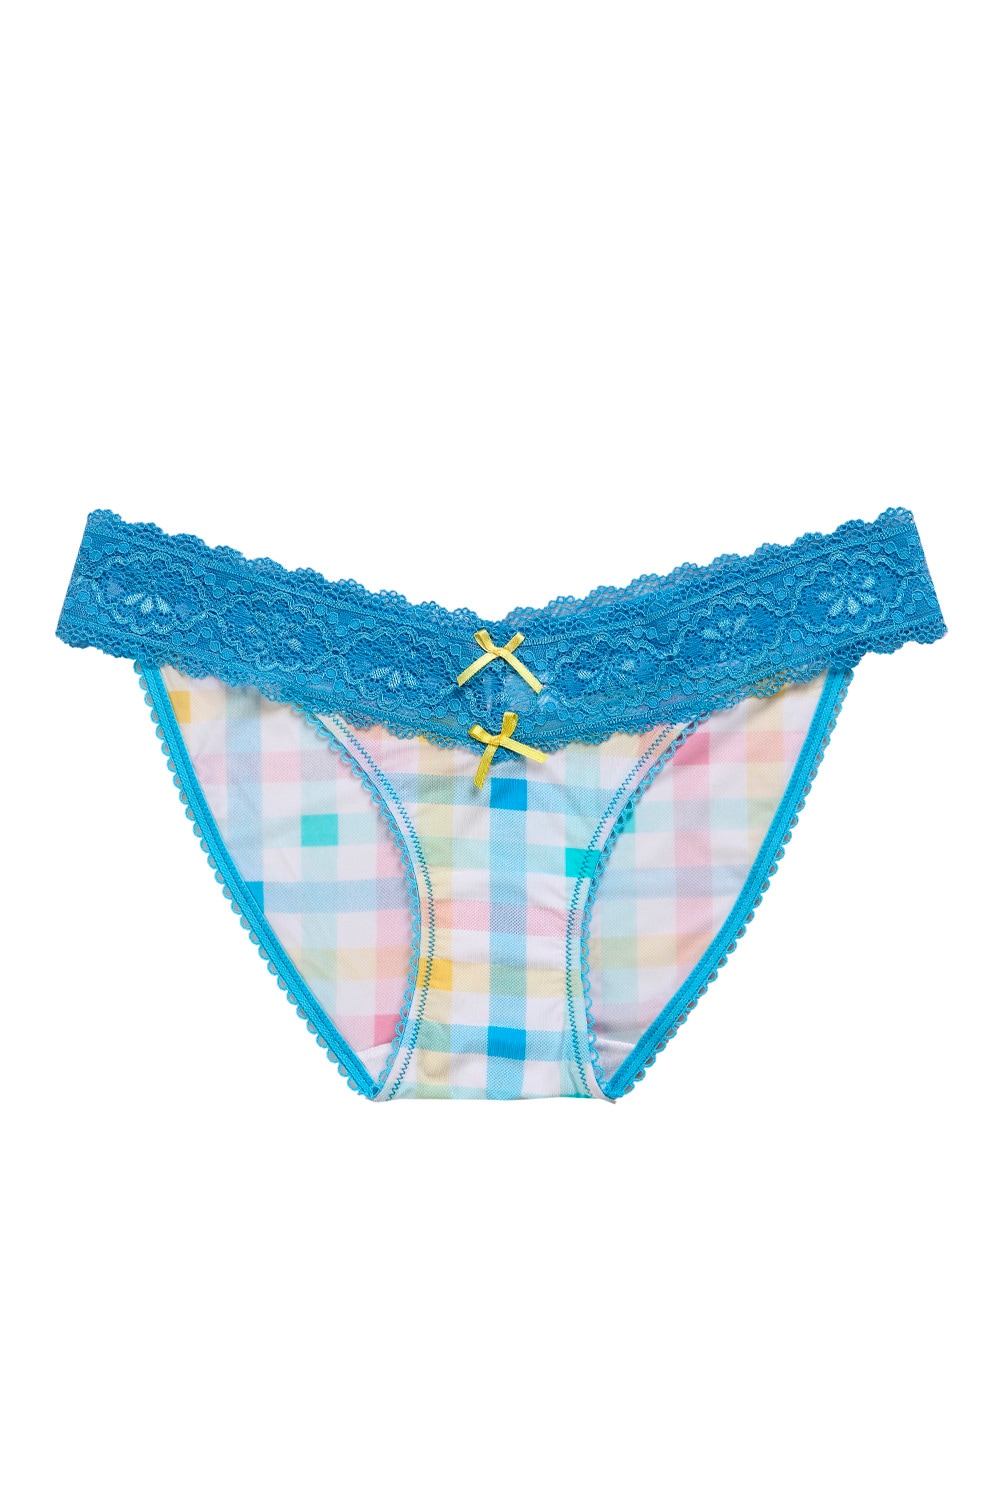 Women Viscose Modal Soft Lace Trim Microfiber Lace Underwear Panty- Cobalt Blue